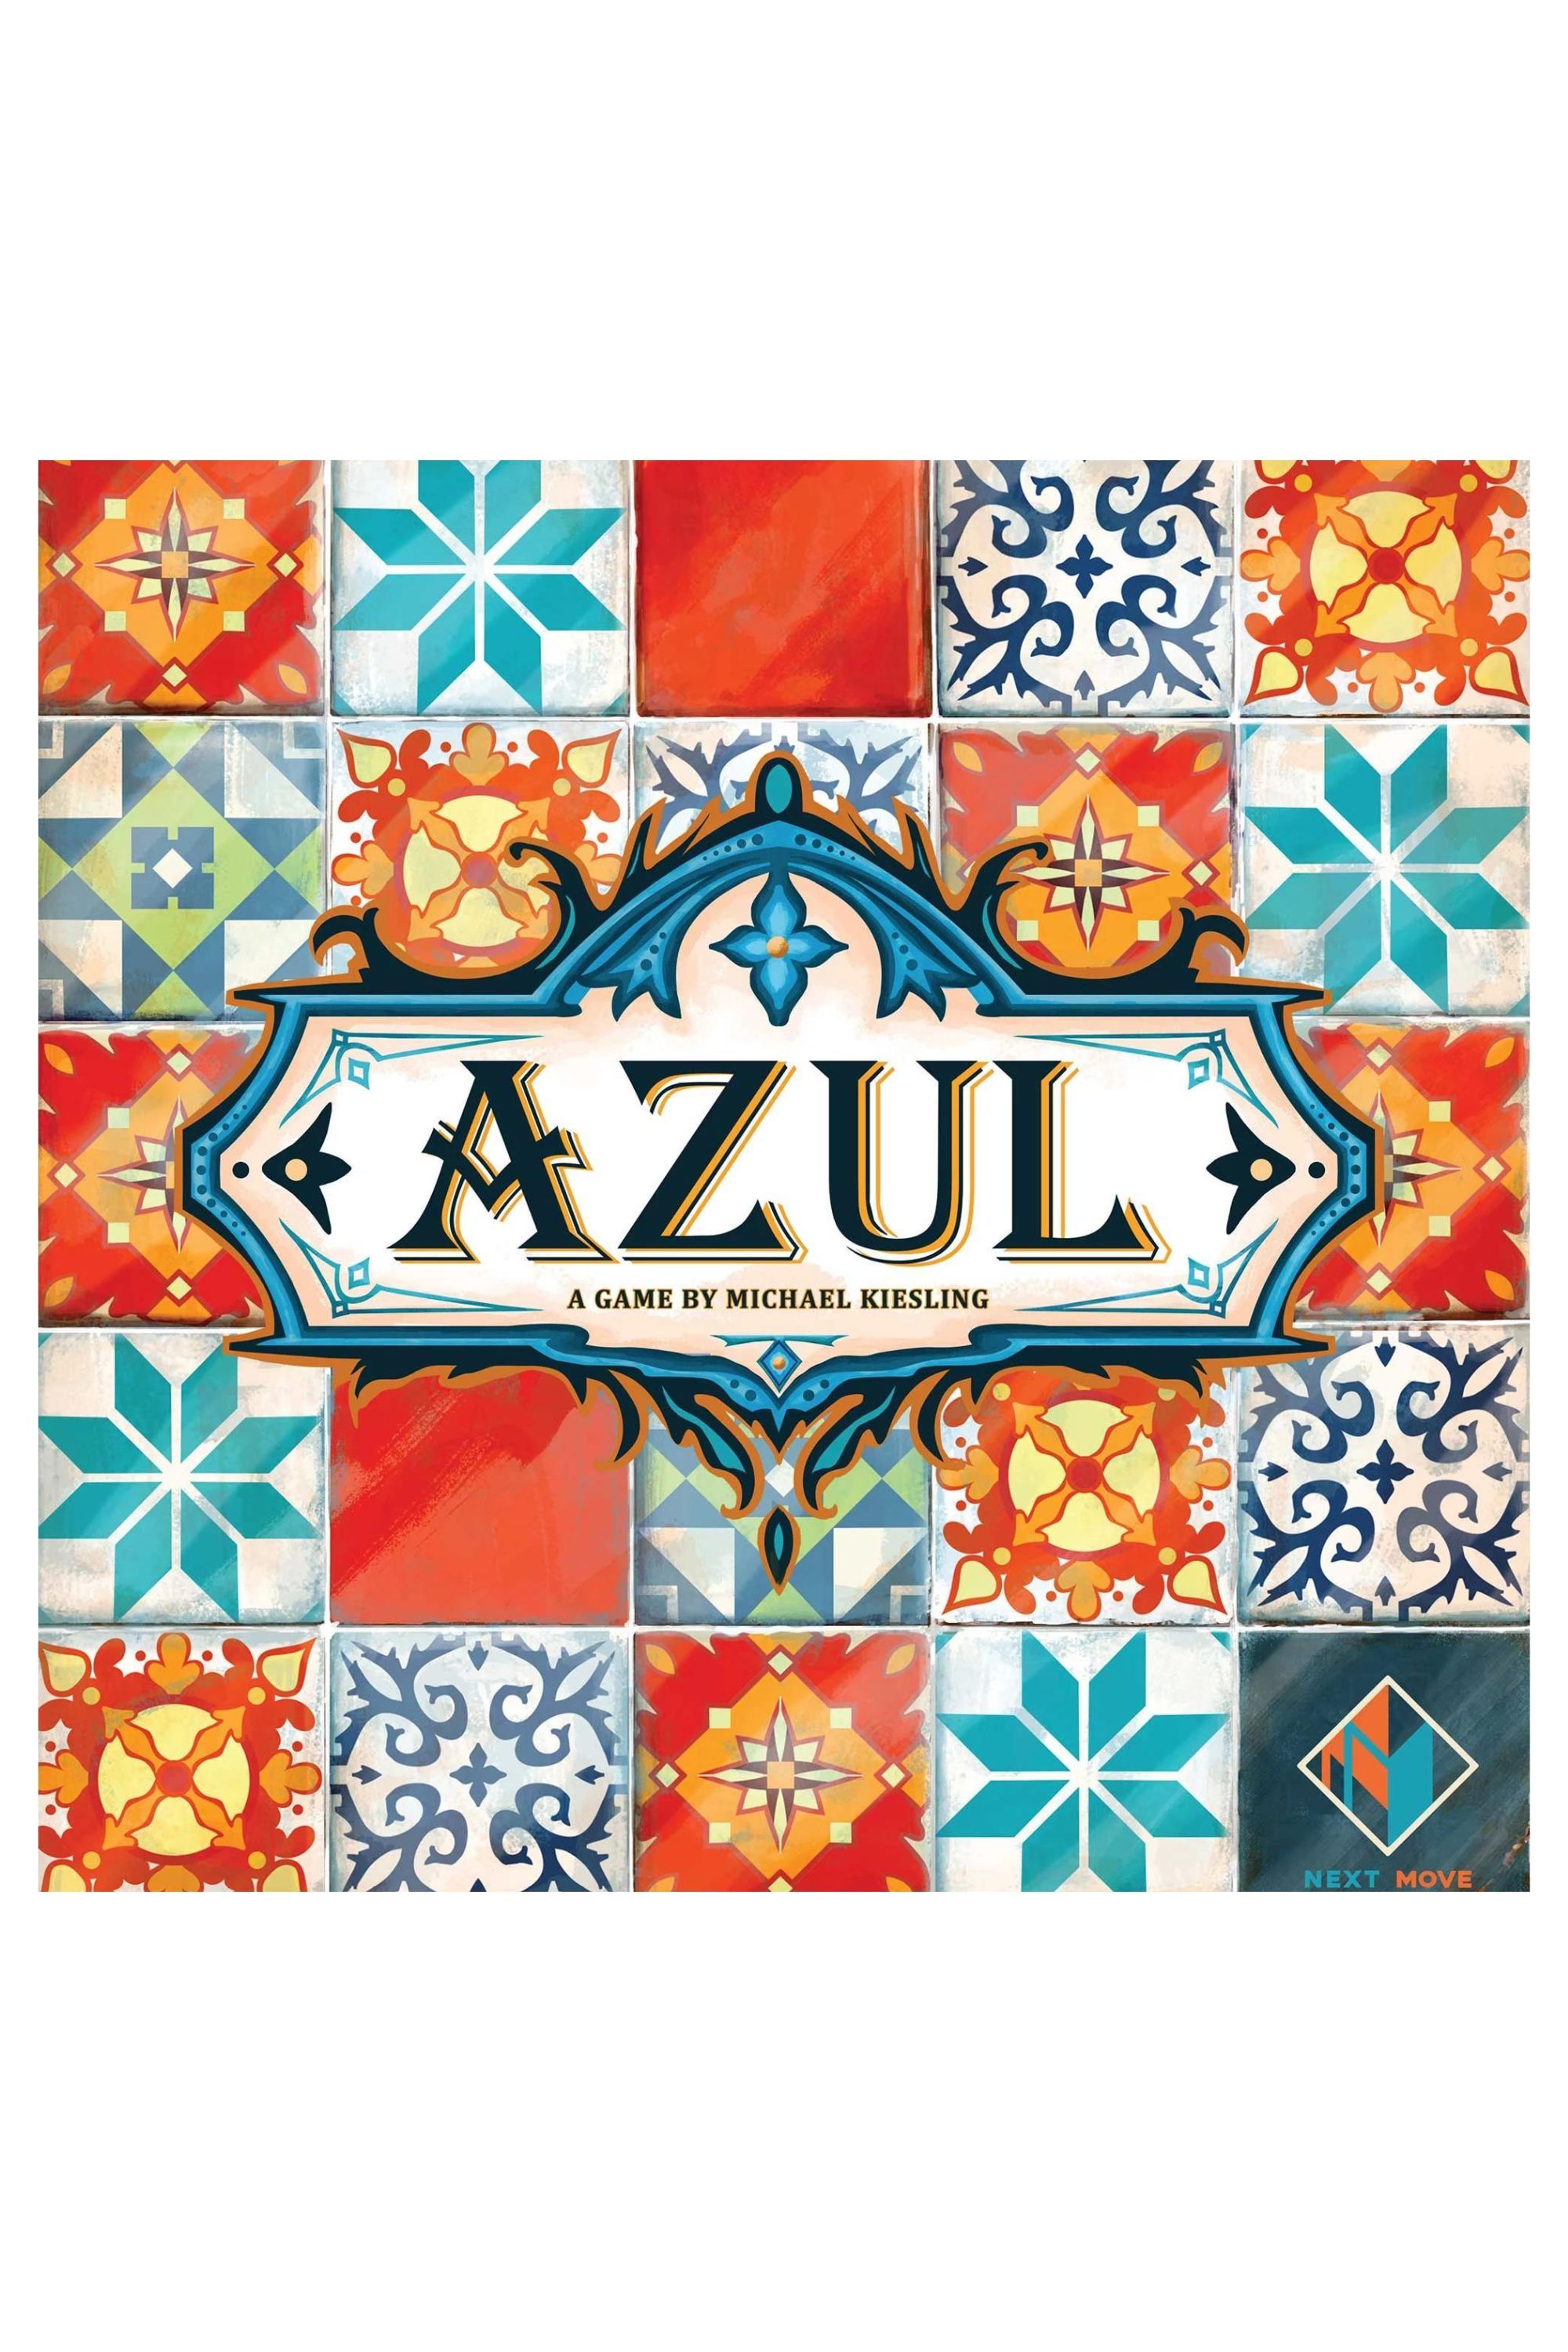 Sản phẩm tĩnh của trò chơi bảng Azul với tác phẩm nghệ thuật thể hiện hoa văn khảm màu đỏ và xanh trên nền trắng.